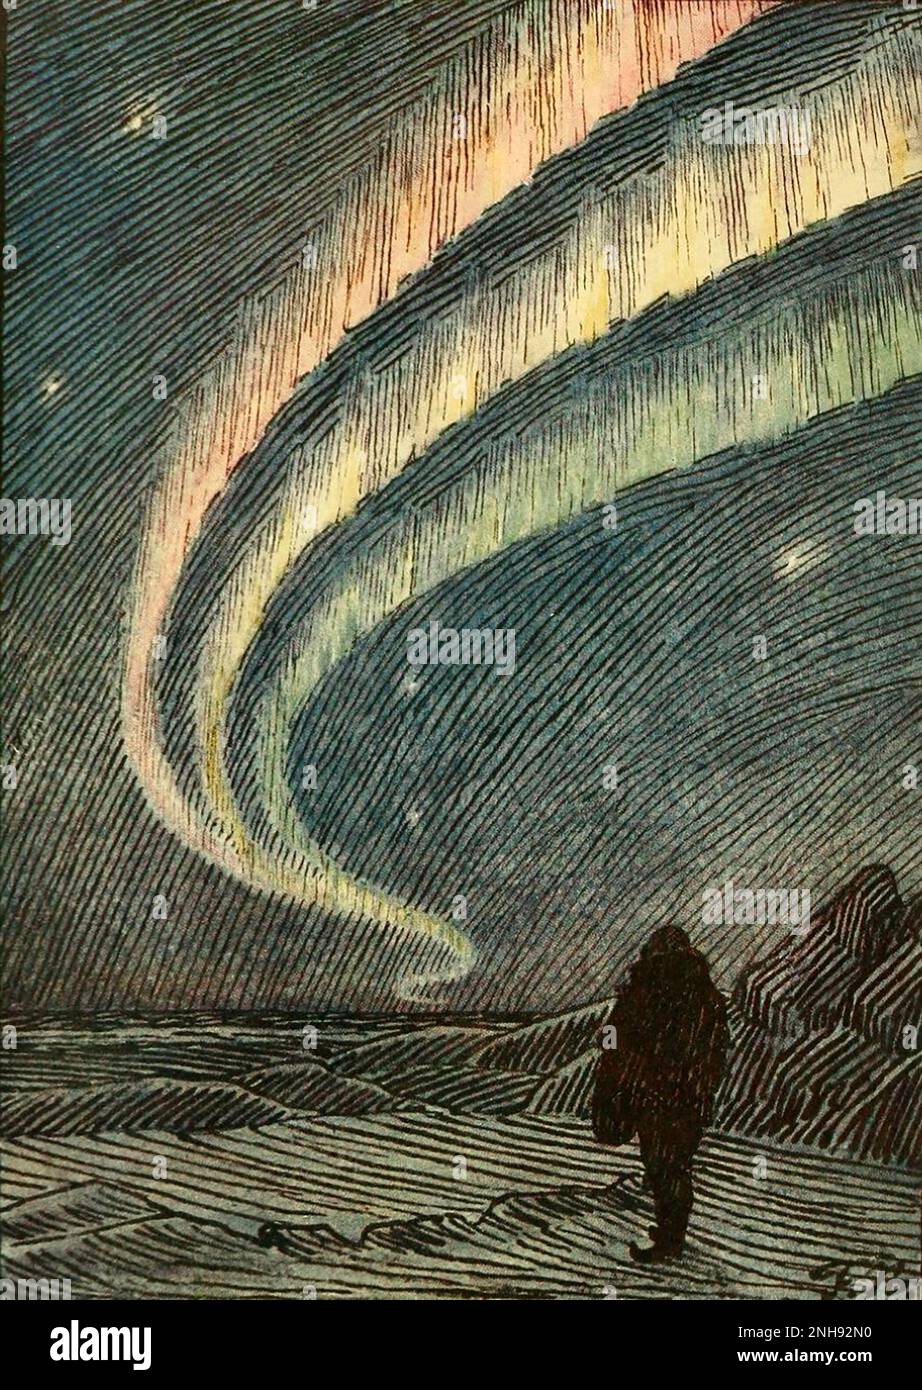 Illustrazione dell'aurora boreale da 'nelle nebbie del nord' di Fridtjof Nansen, 1911. Fridtjof Nansen (1861-1930) è stato un esploratore norvegese e premio Nobel per la pace. Foto Stock